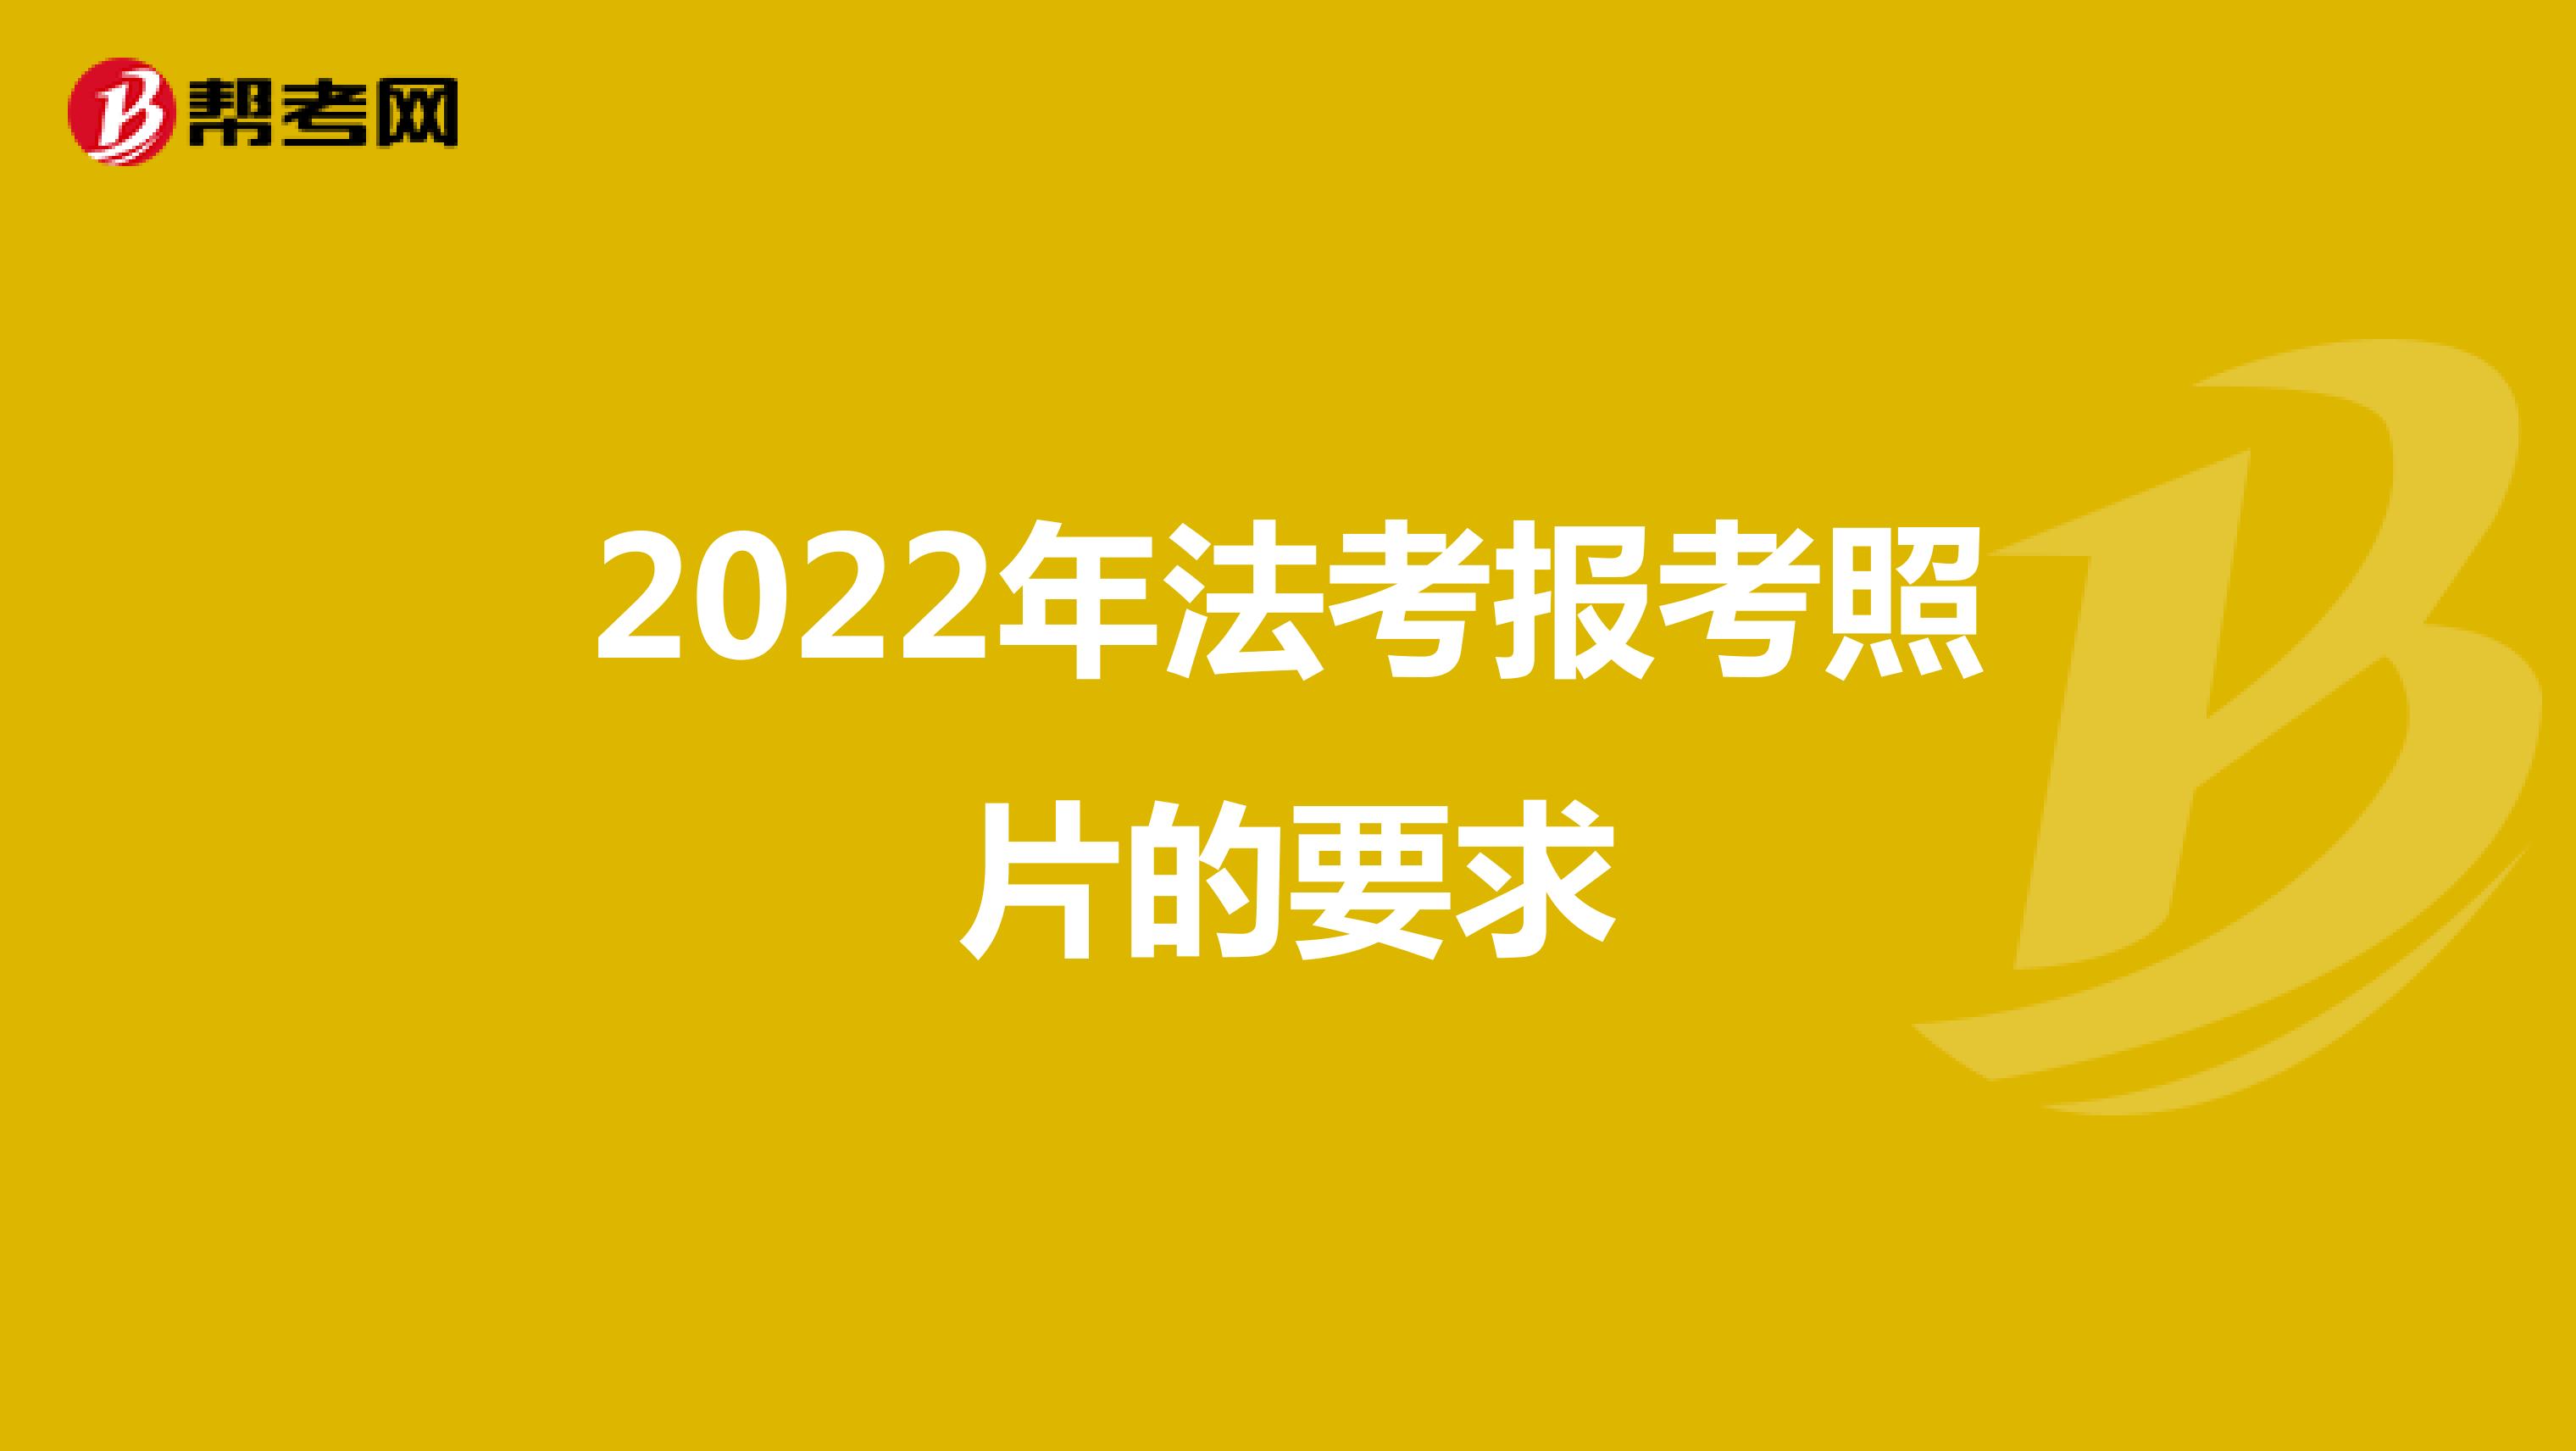 2022年法考报考照片的要求